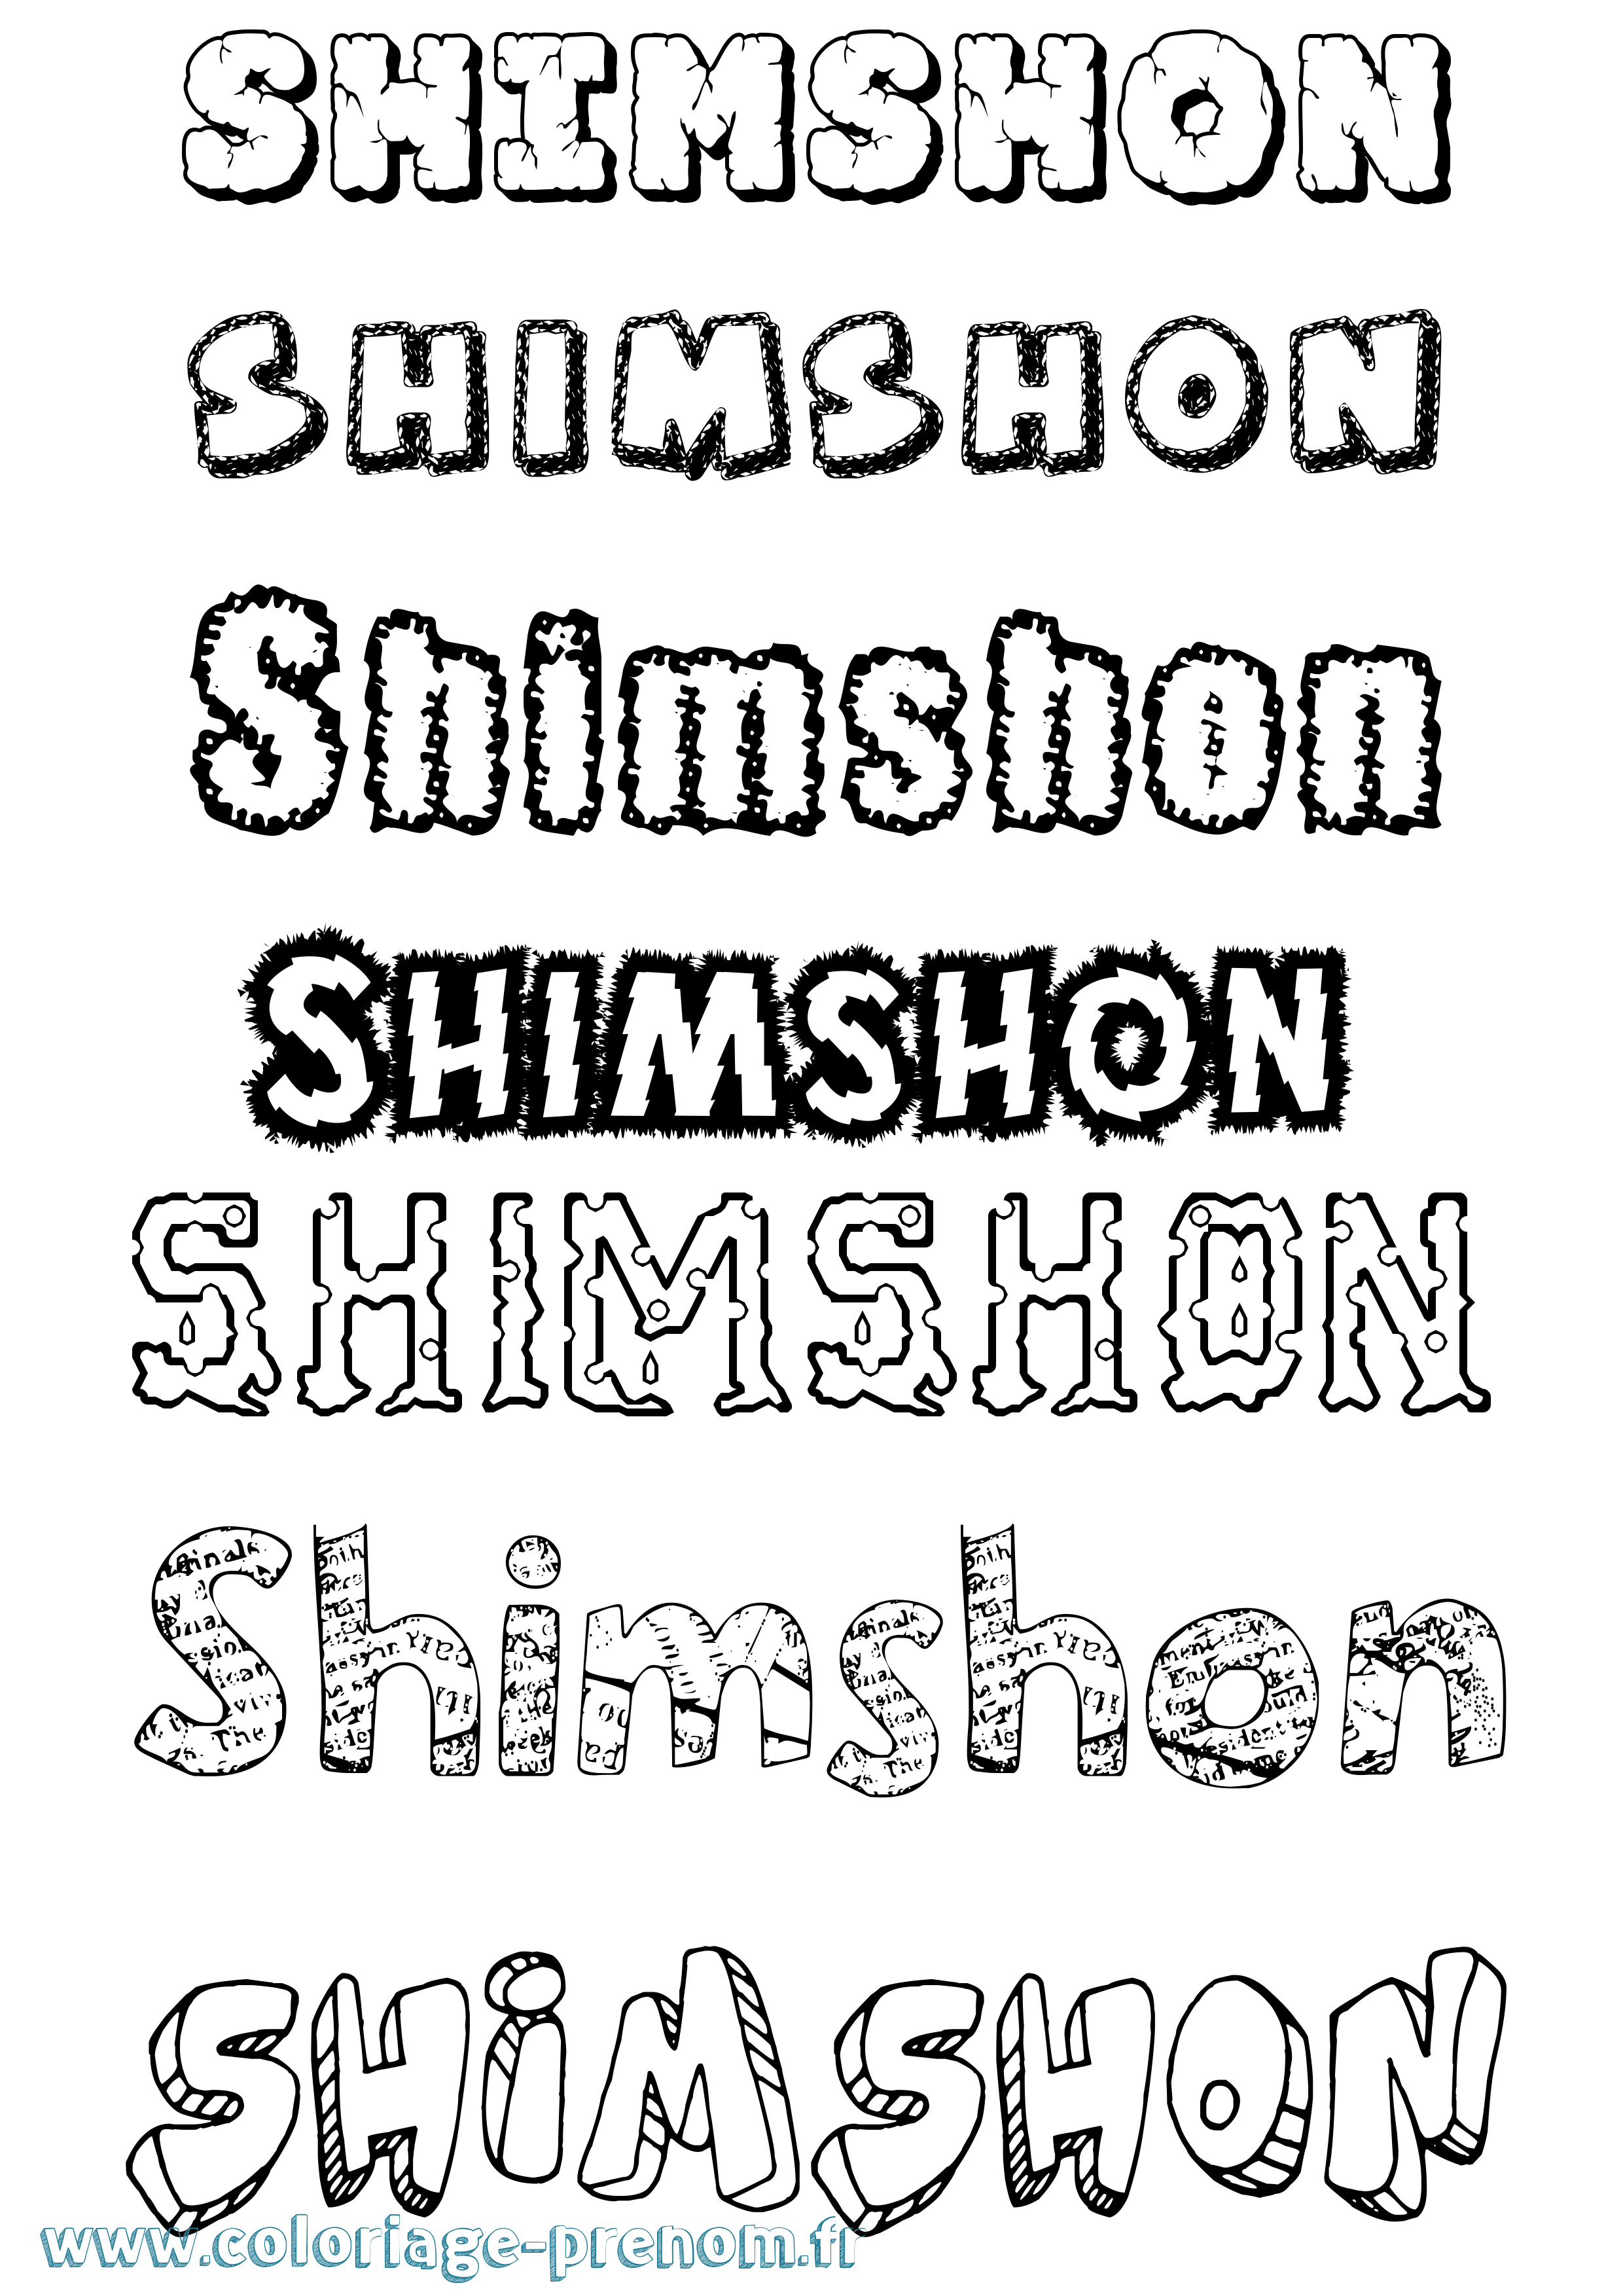 Coloriage prénom Shimshon Destructuré